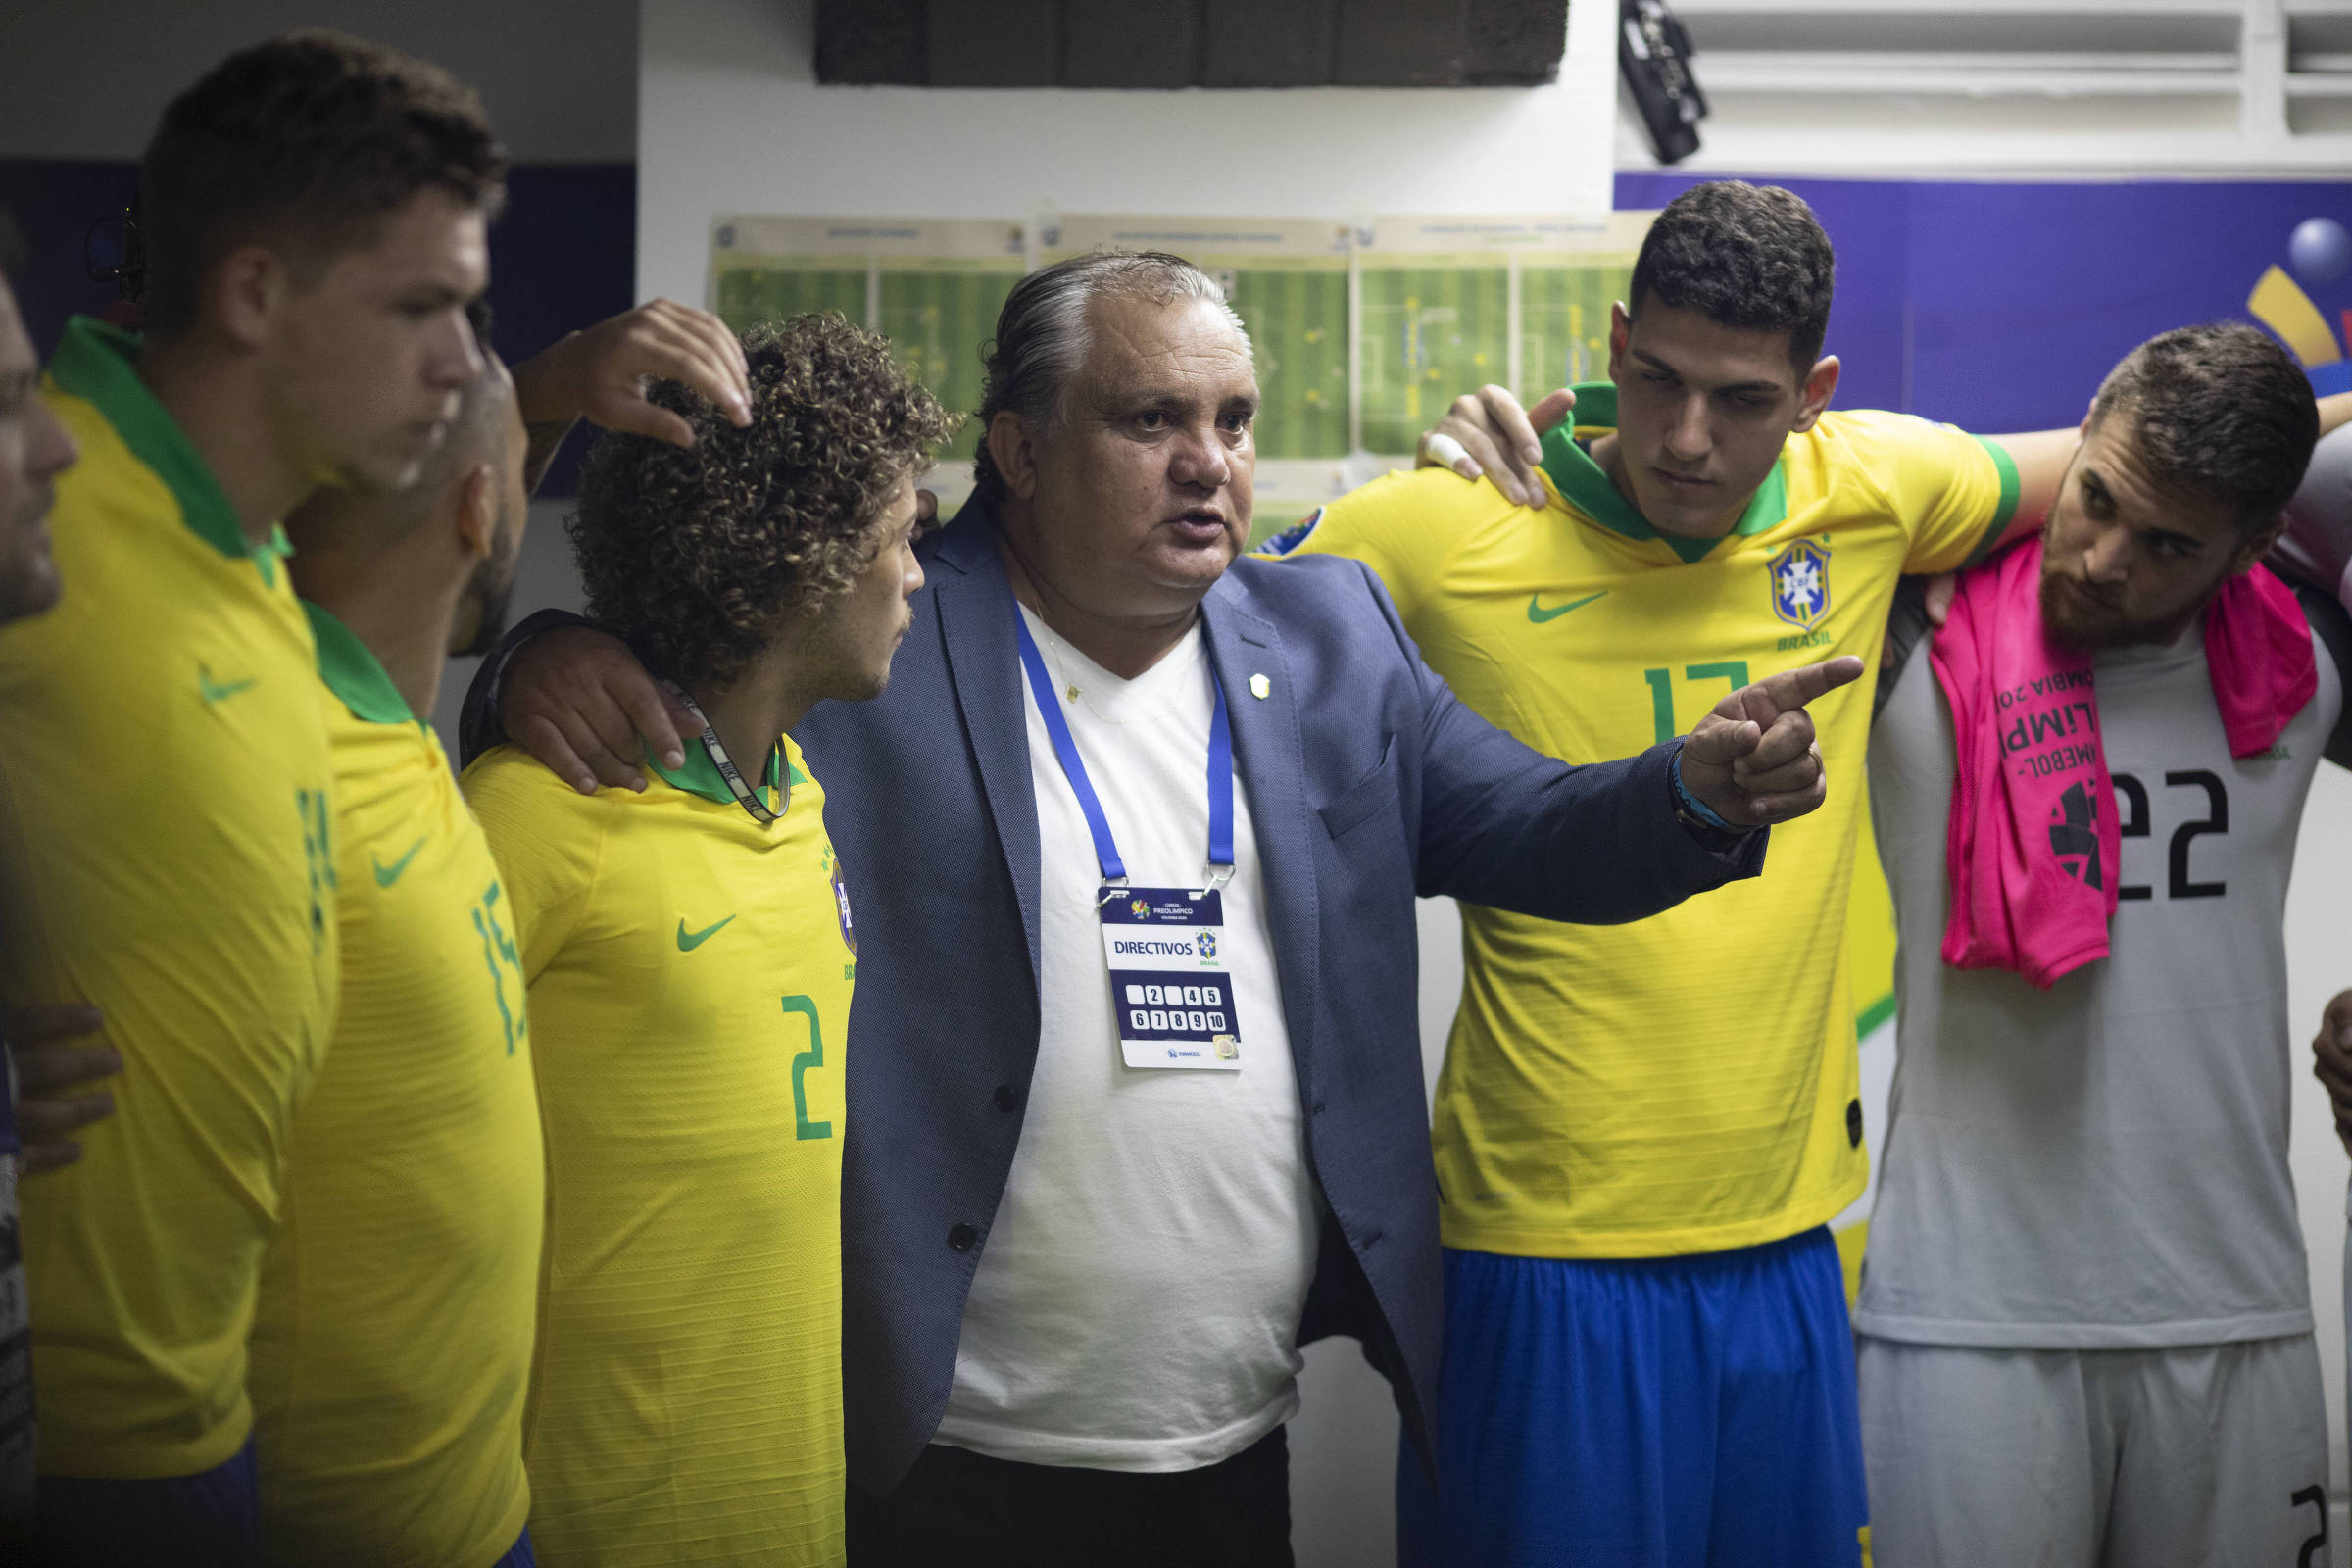 Lista reúne 25 melhores jogadores de 2022; nenhum brasileiro foi selecionado